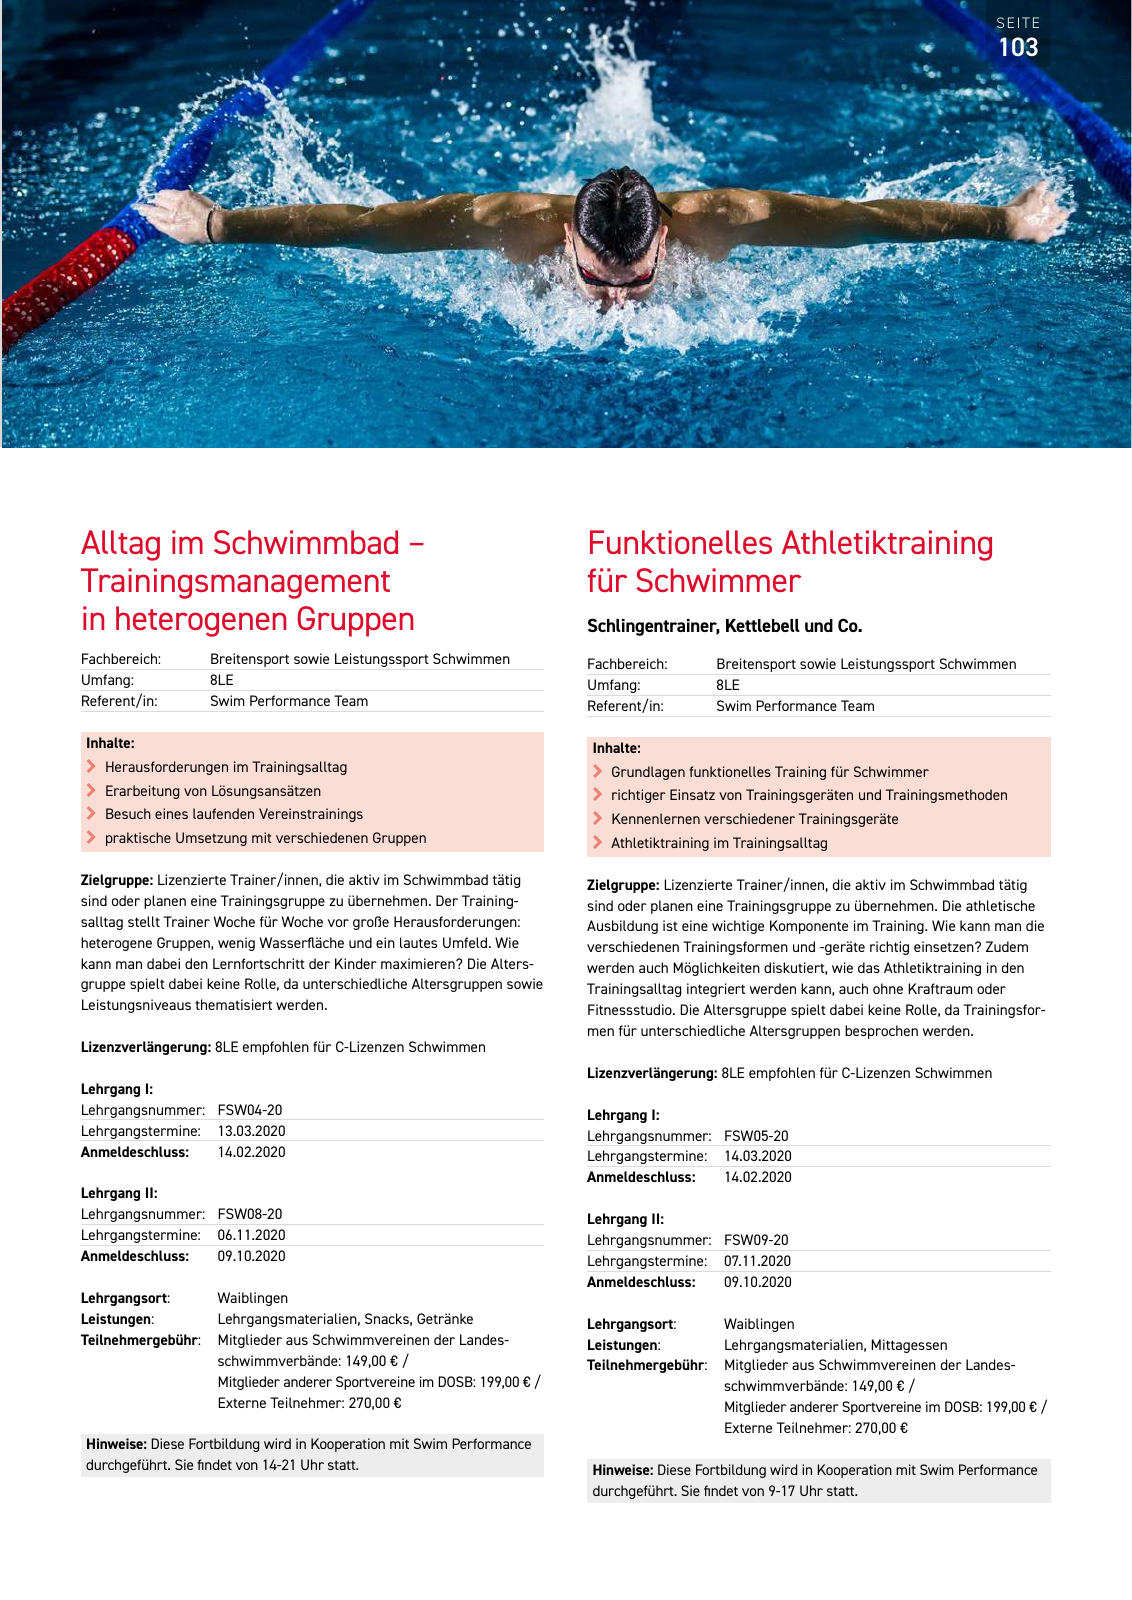 Vorschau Lehrgänge 2020 // Akademie des Schwimmsports Seite 103